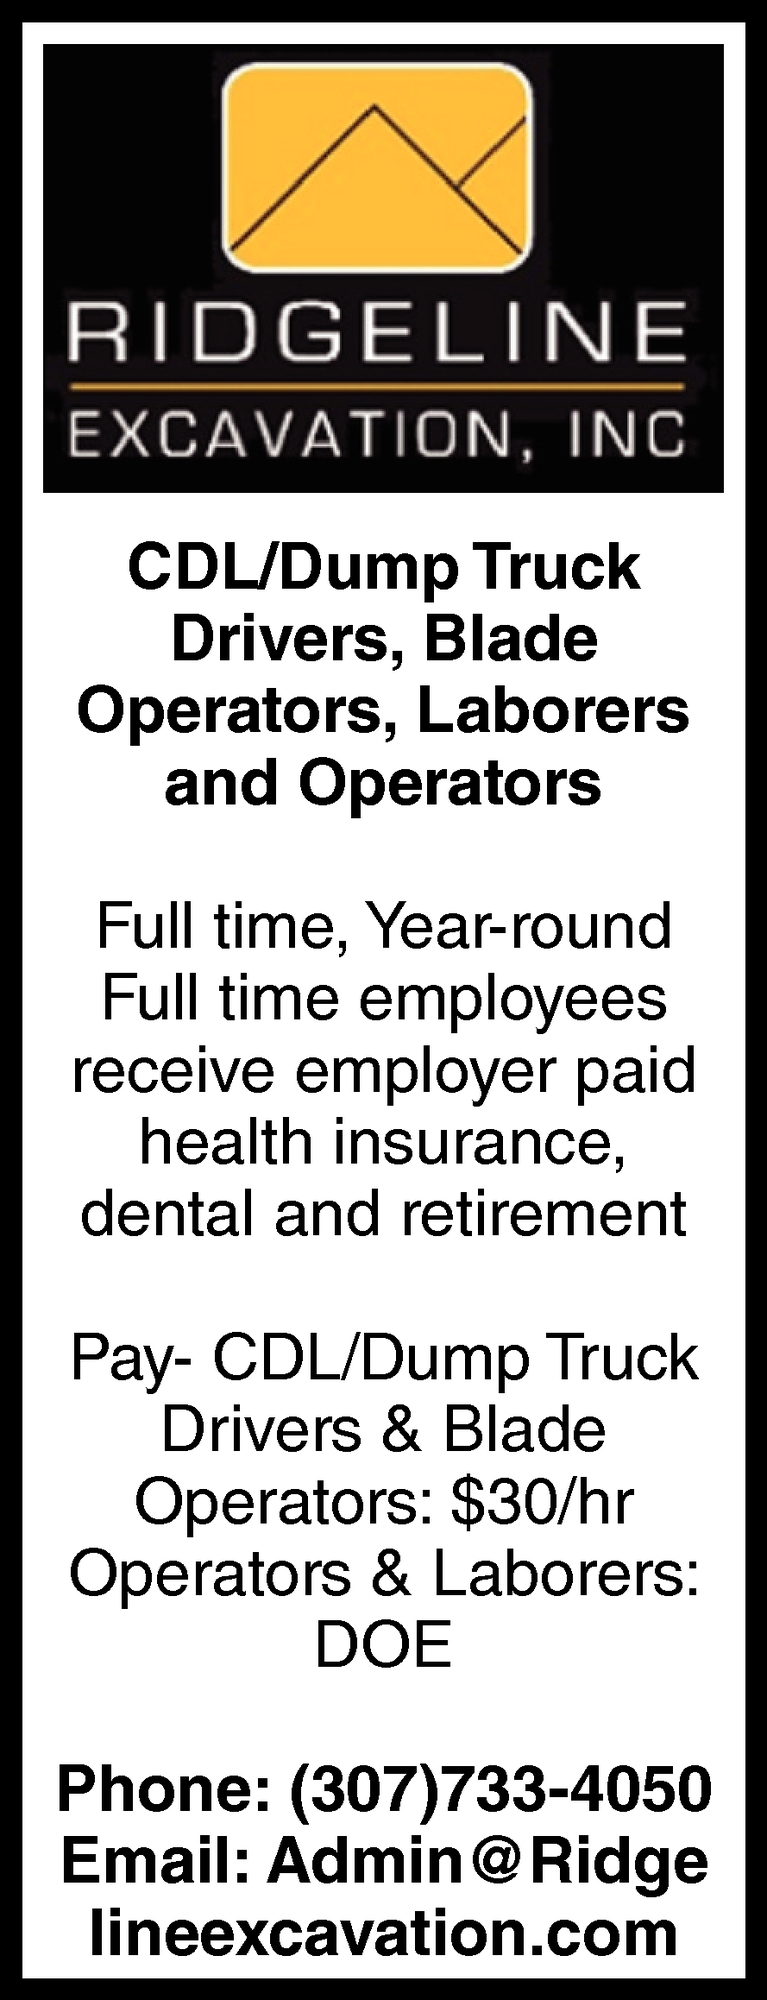 CDL/Dump Truck Drivers, Blade